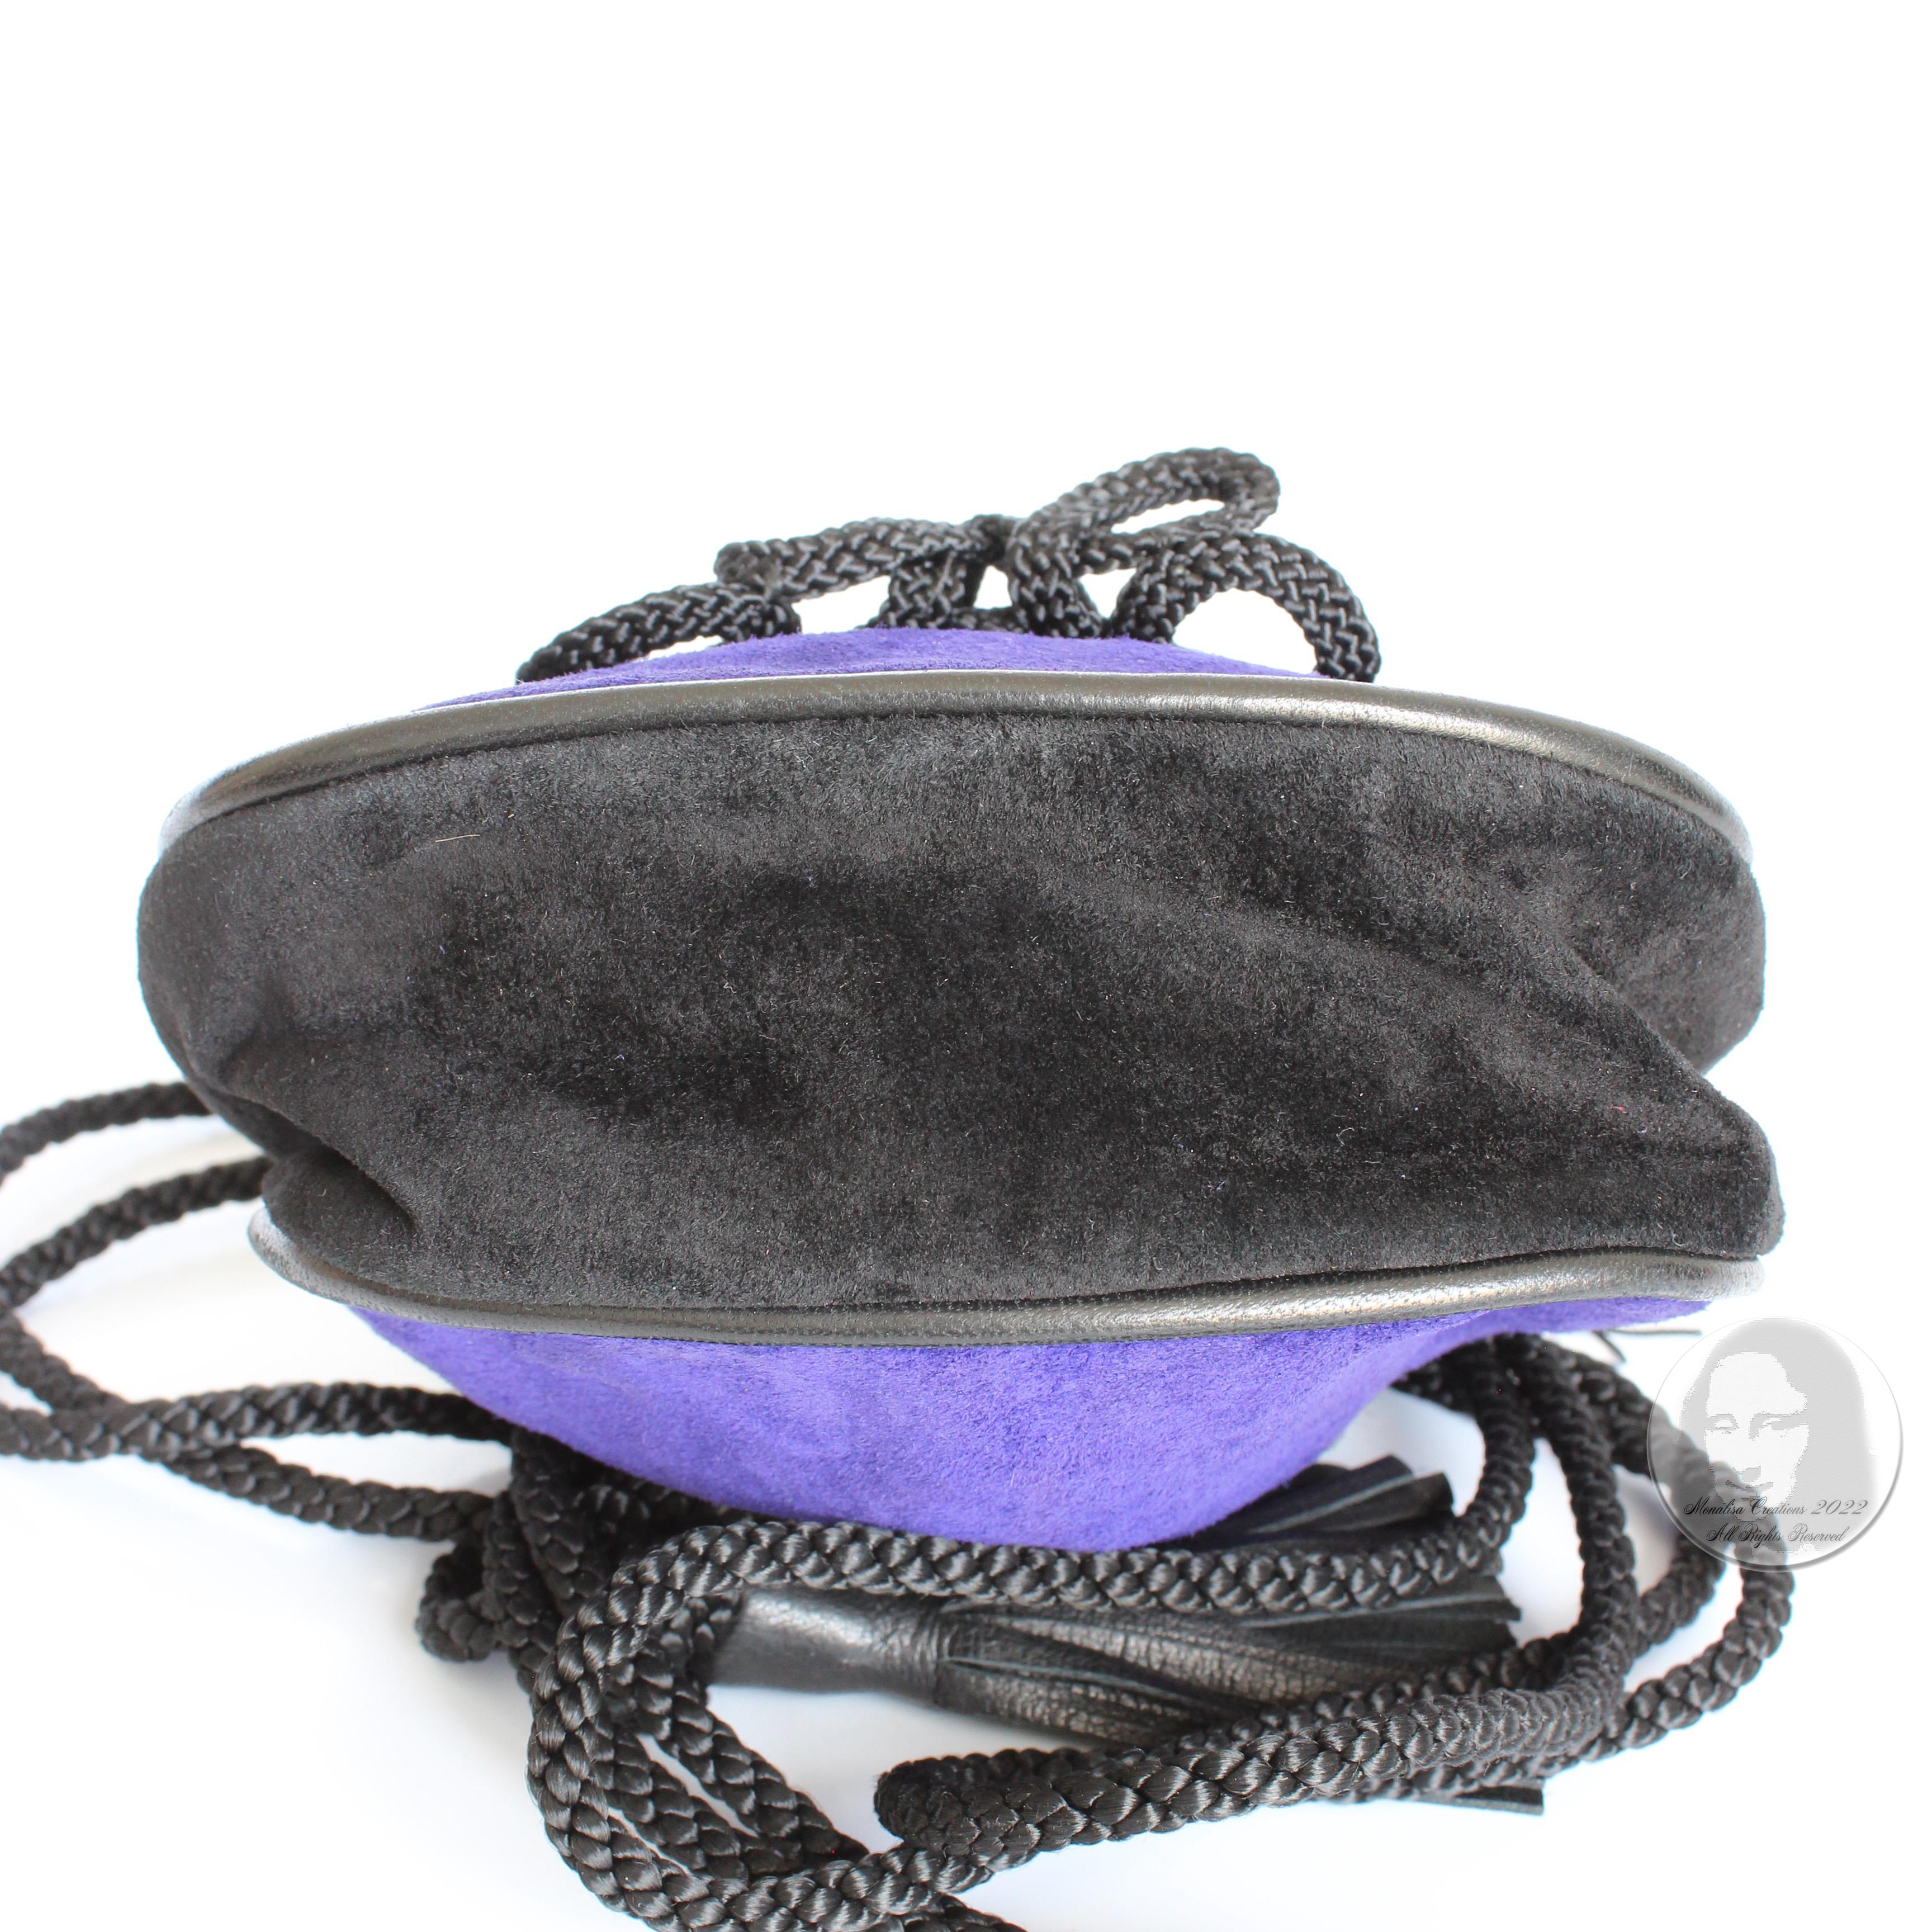 Yves Saint Laurent Evening Bag Tassels Purple Black Suede Leather Belt Pouch 90s 7